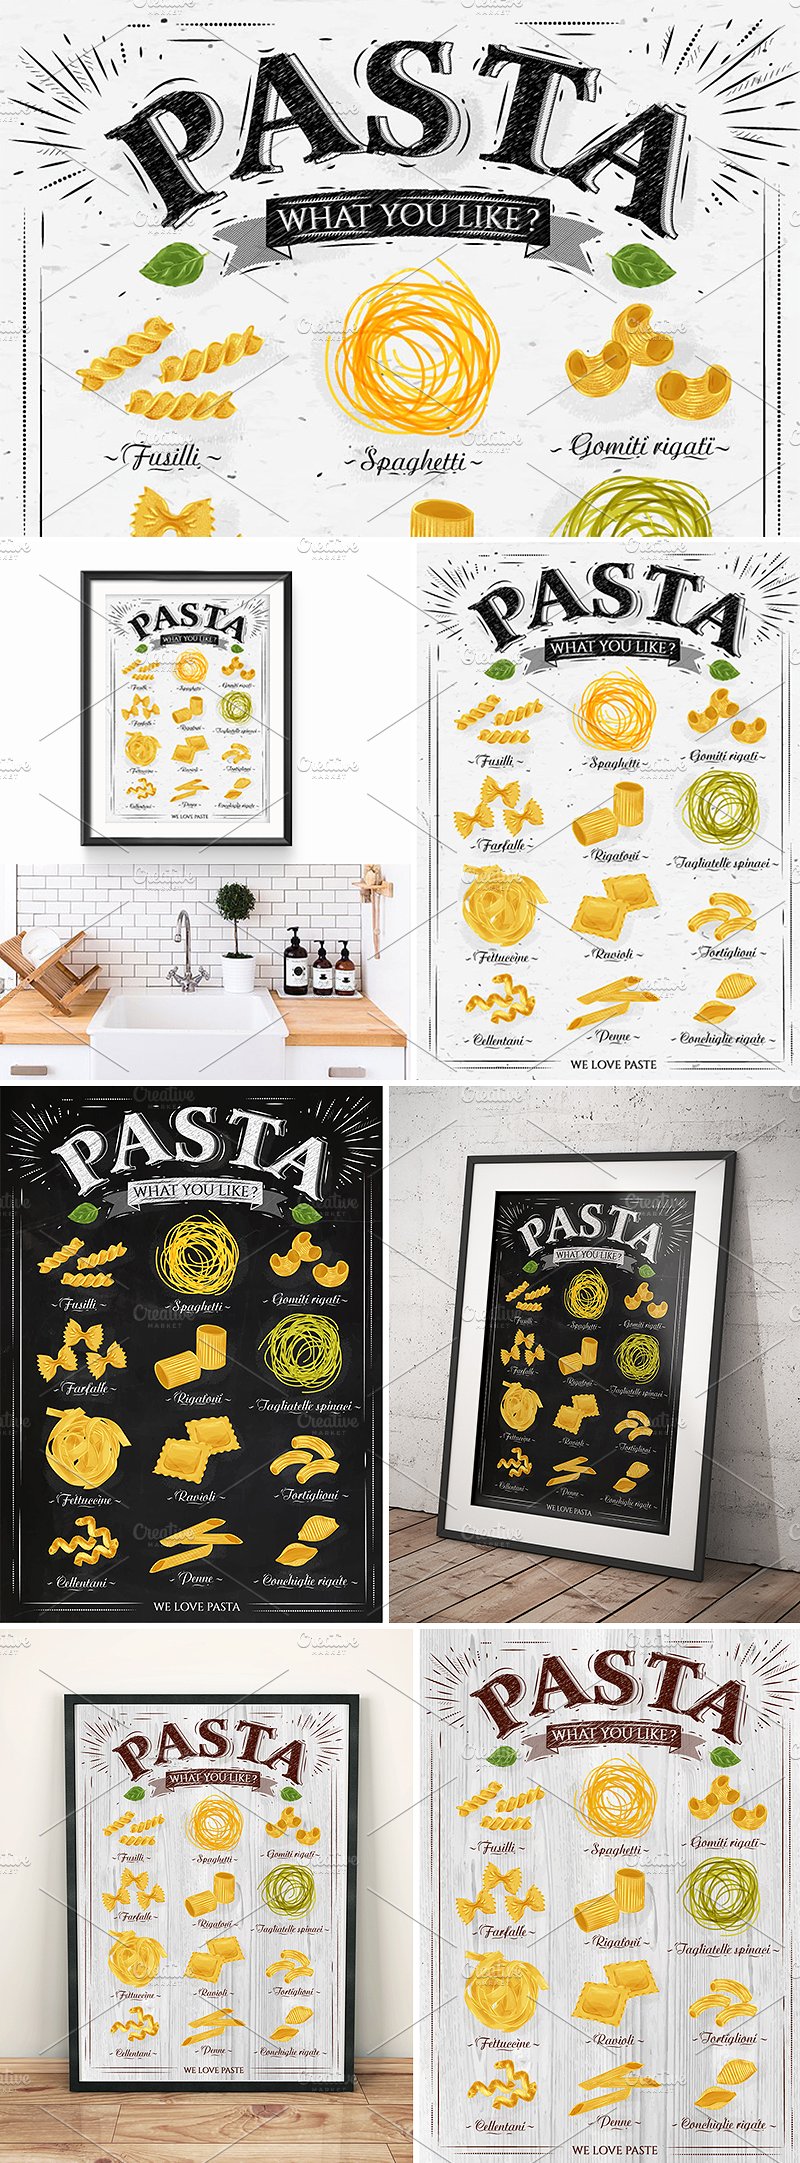 意大利面食面馆海报模板 Pasta-Poster #5781